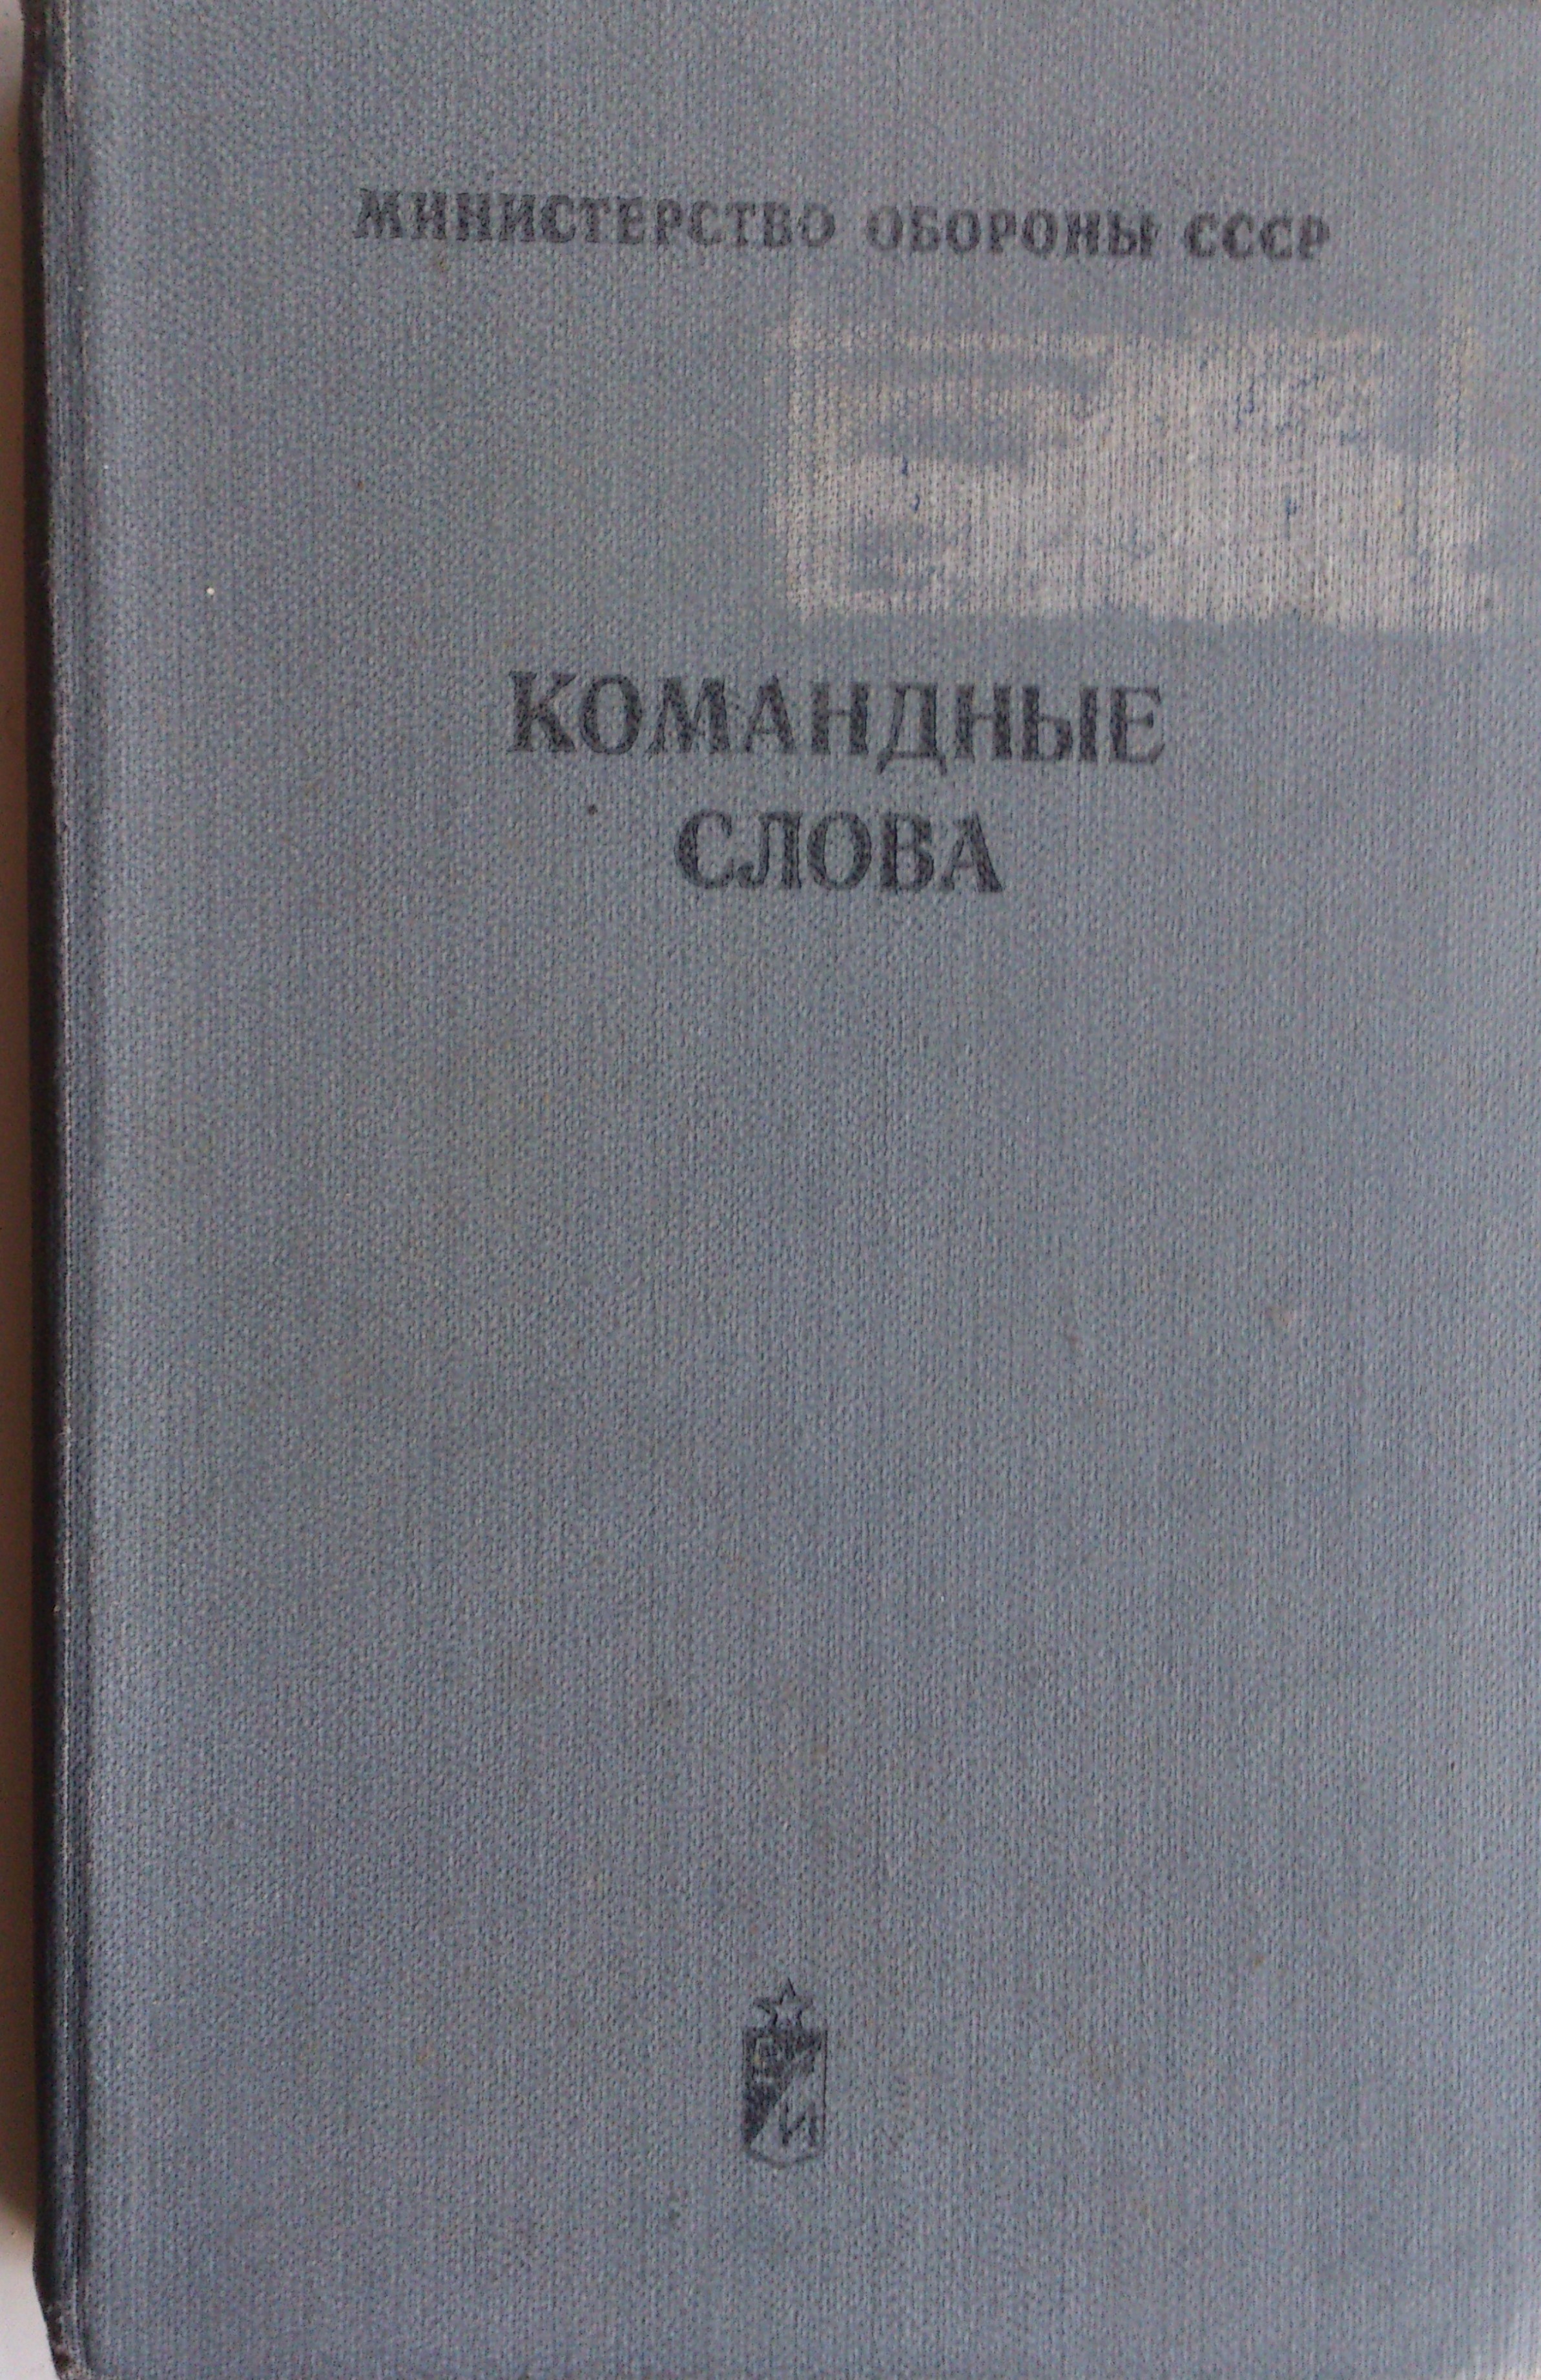 КОМАН DSC 0812 (1)